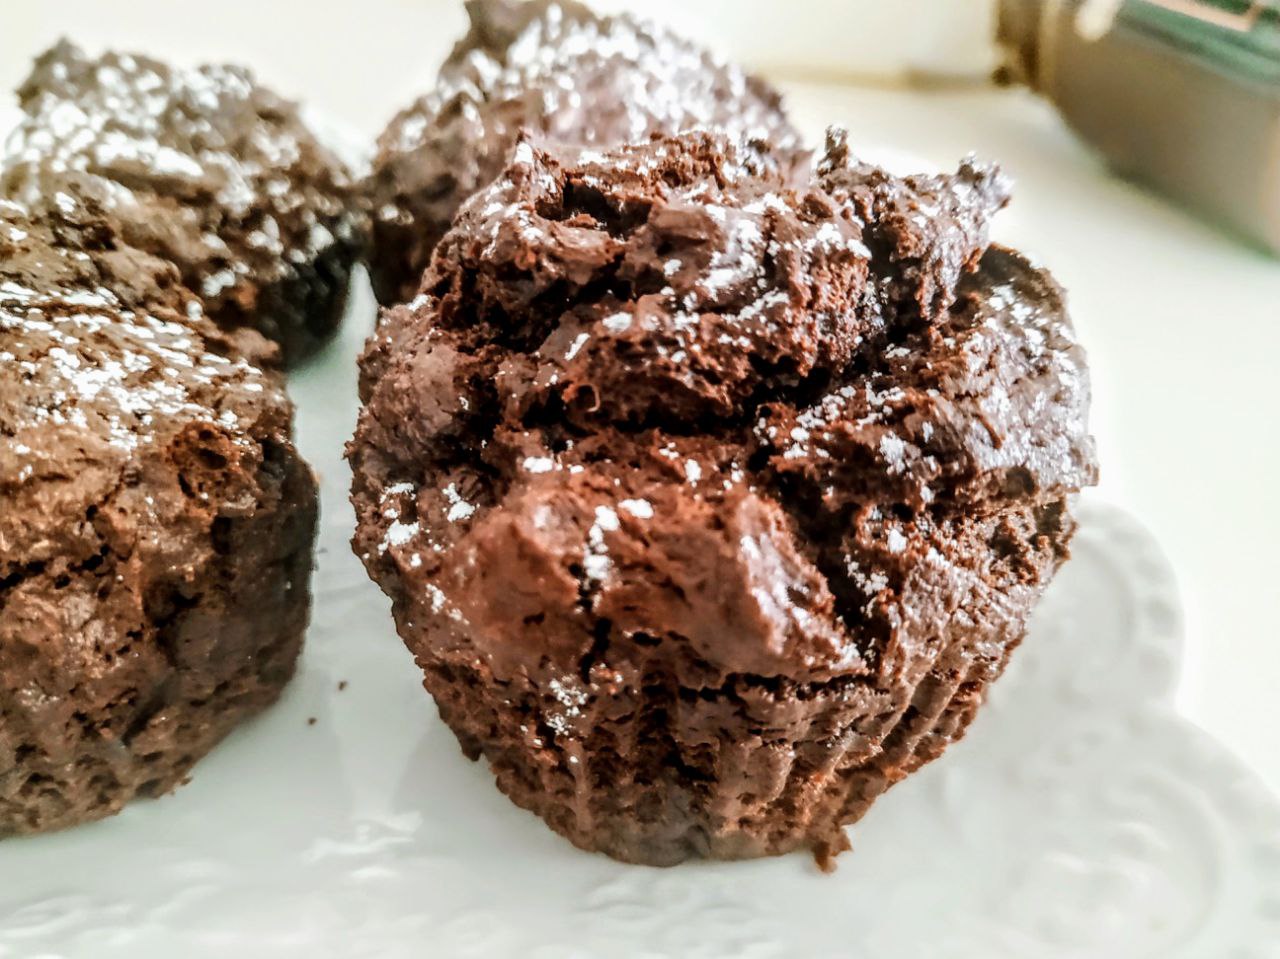 Dolci semplici e veloci: muffin alla crema spalmabile fondente con zucchero di canna senza olio e senza burro!